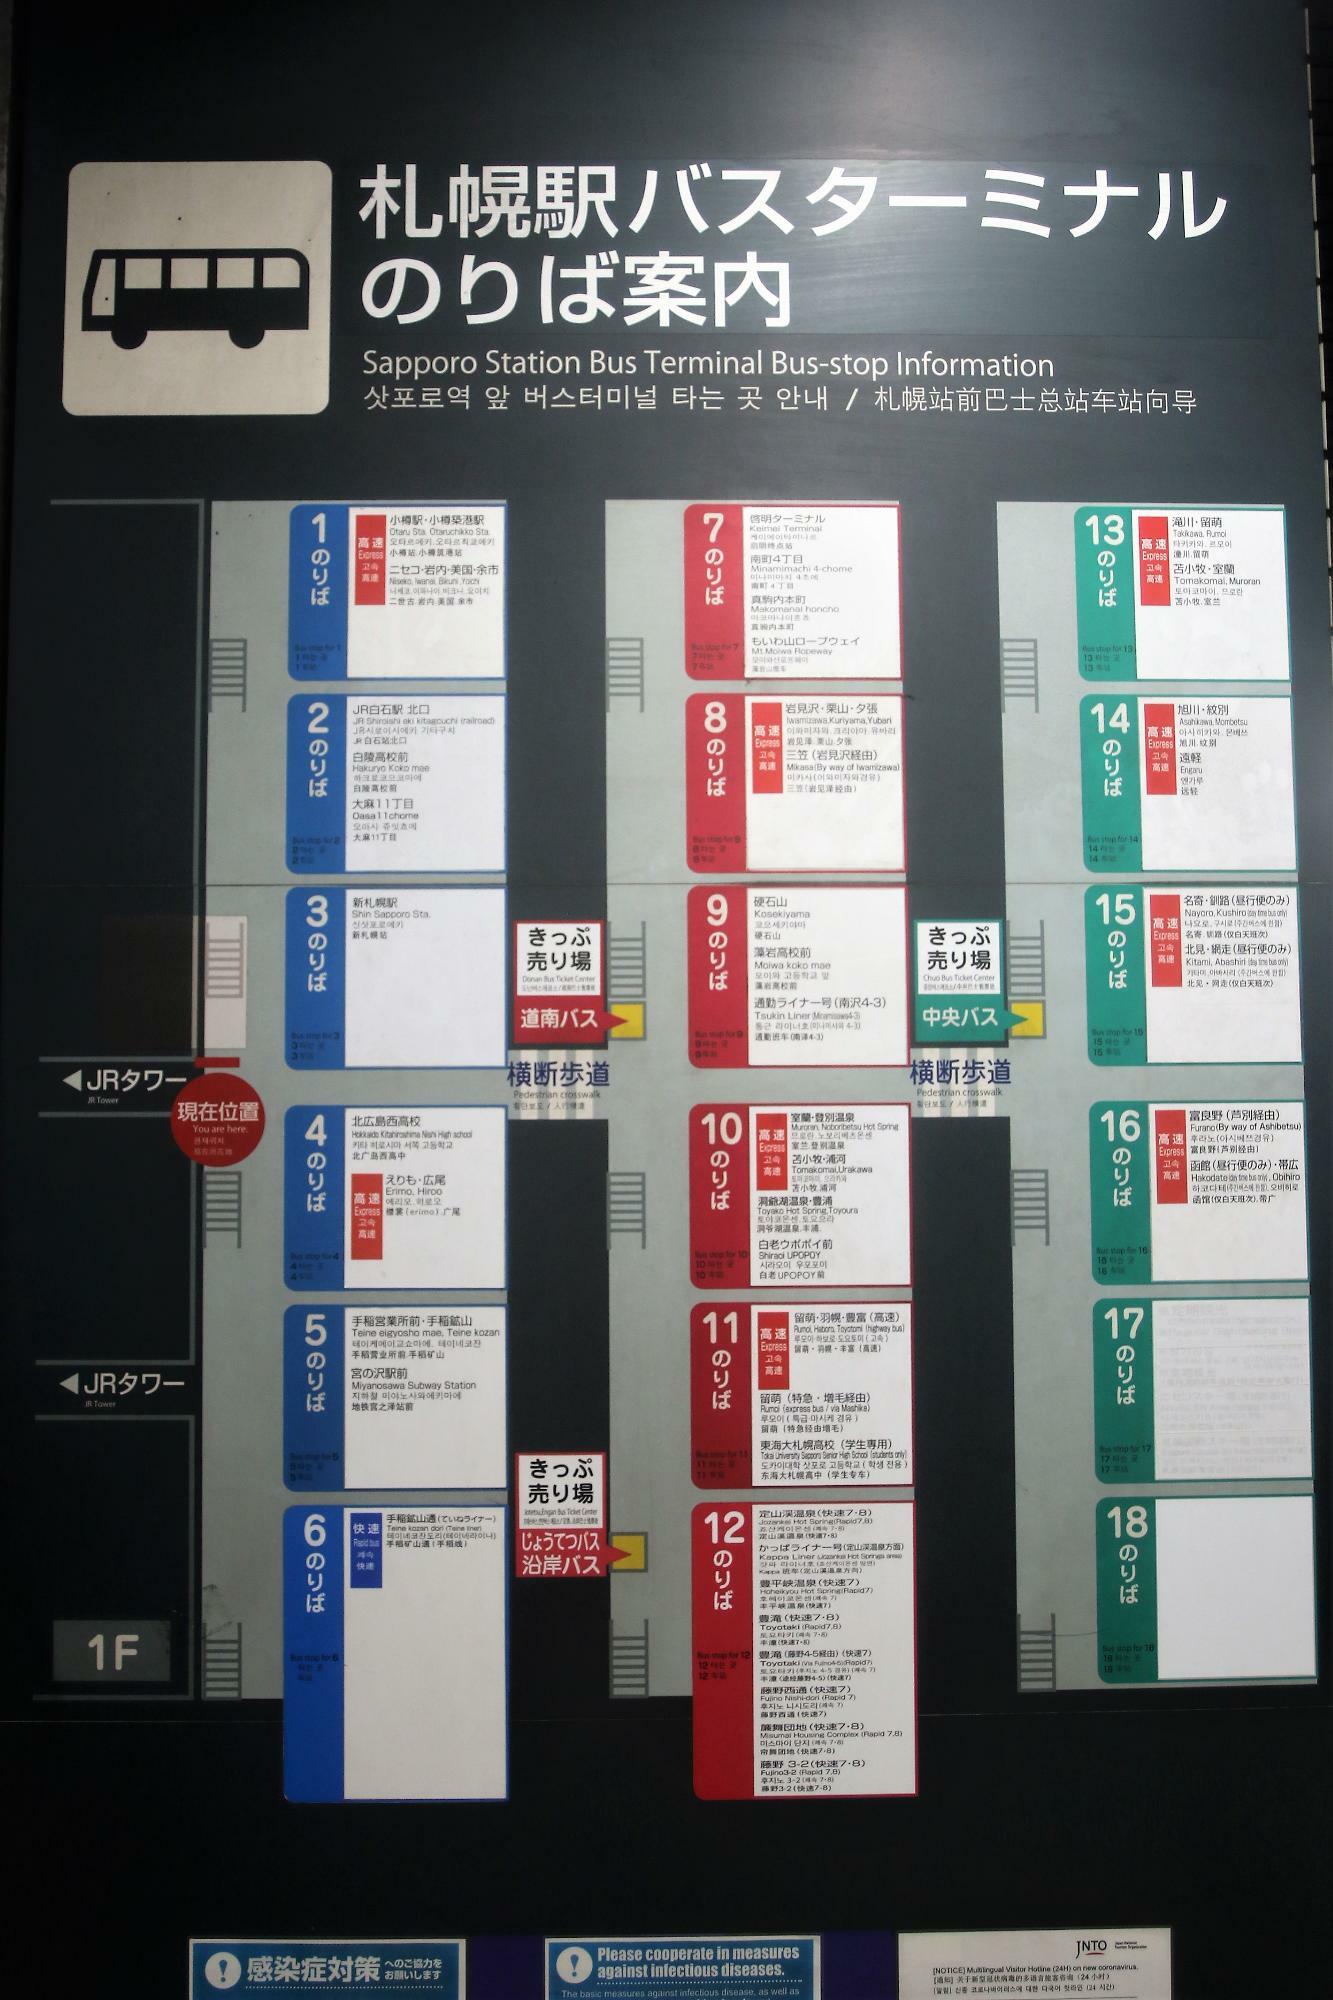 札幌駅バスターミナルのりば案内・定期観光バスは修正されている